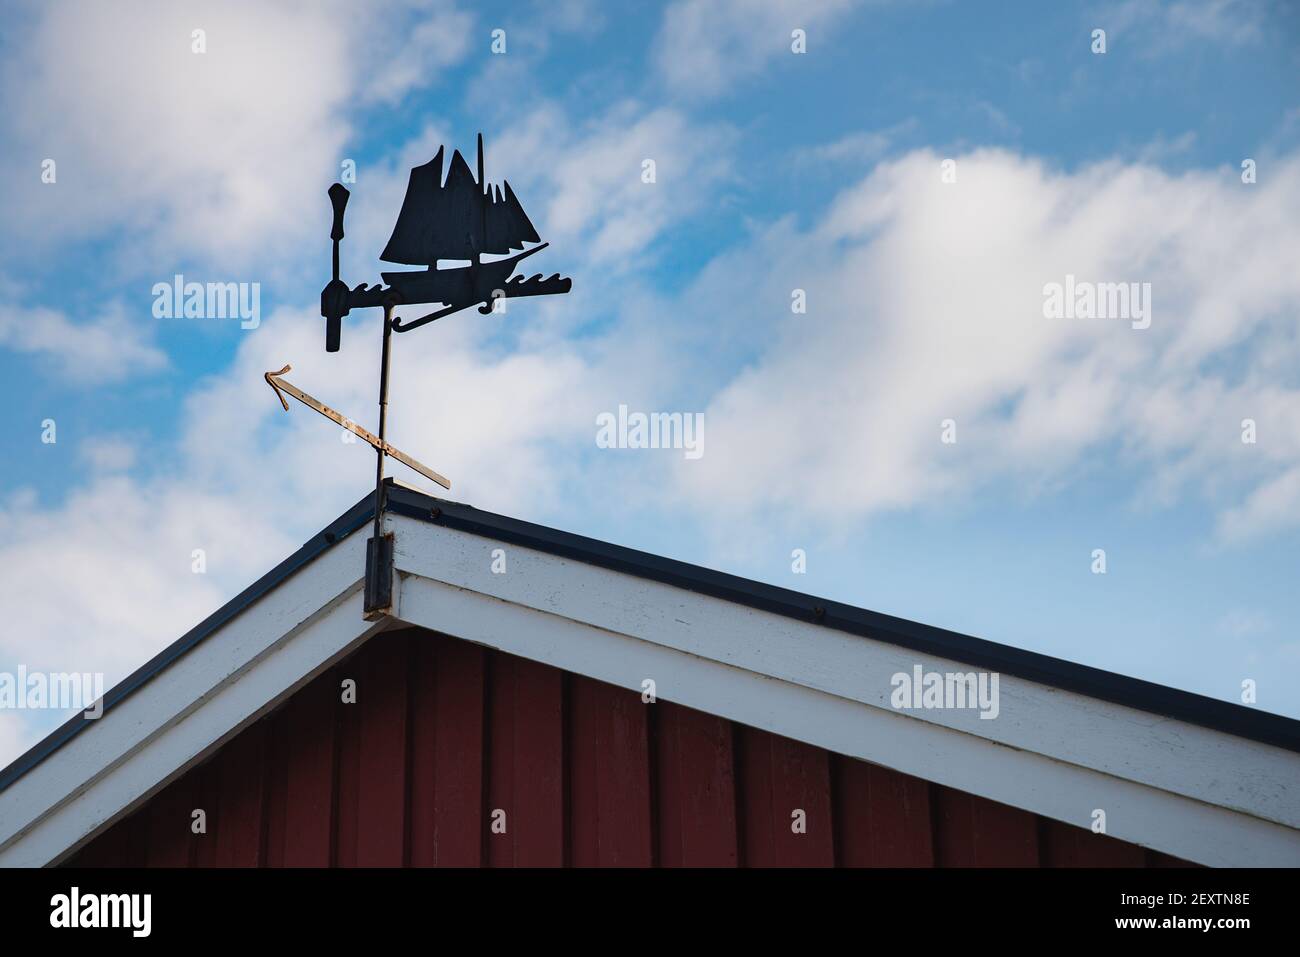 Metallische Wetterfahne auf einem schrägen Dach ähnelt einem alten Wikinger-Segelschiff oder einer Galeere, die die Windrichtung anzeigt. Alte Segelboot Windfahne Stockfoto